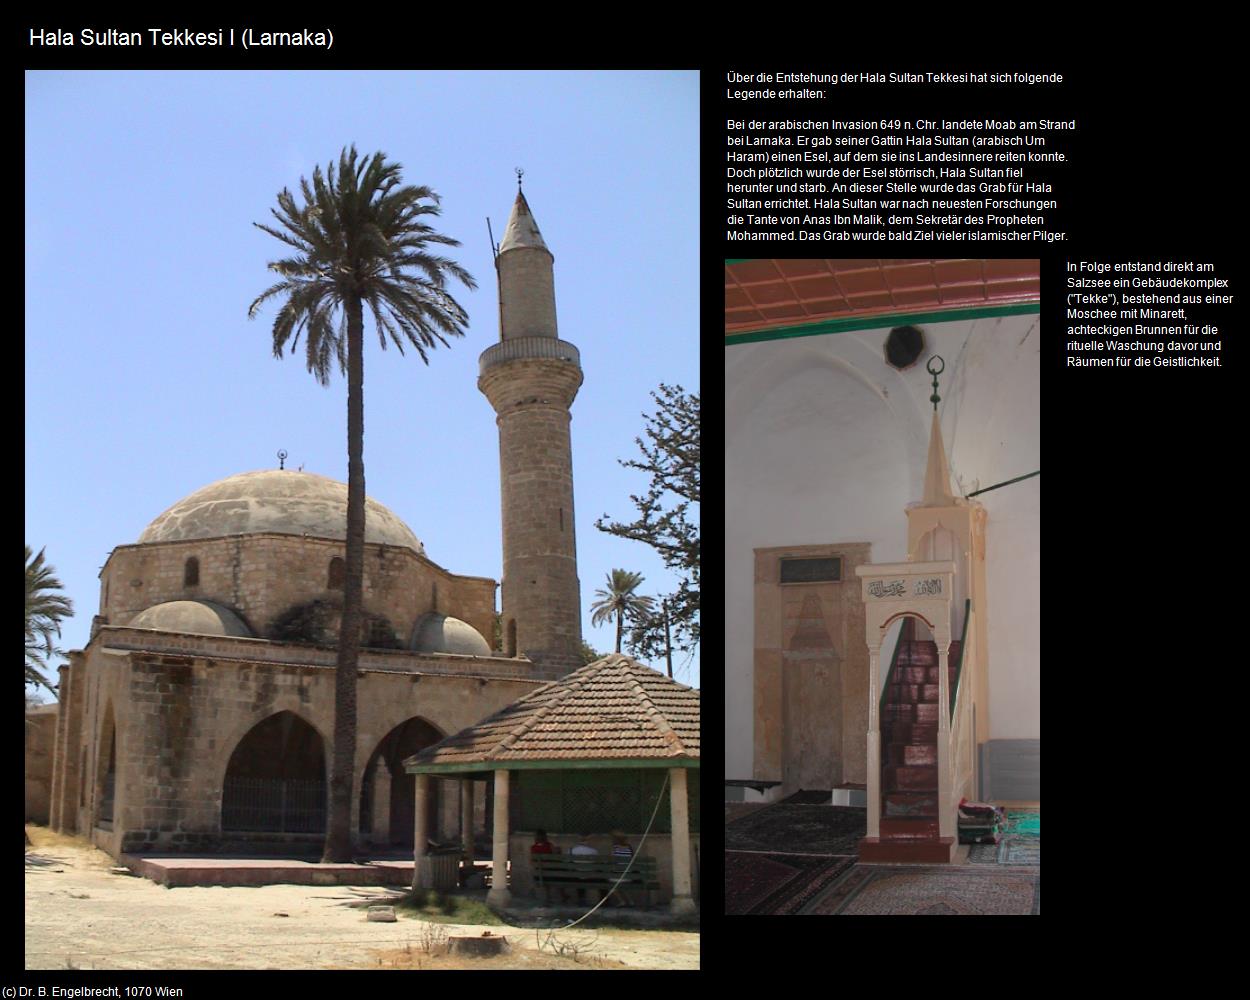 Hala Sultan Tekkesi I (Larnaka) in ZYPERN-Insel der Aphrodite